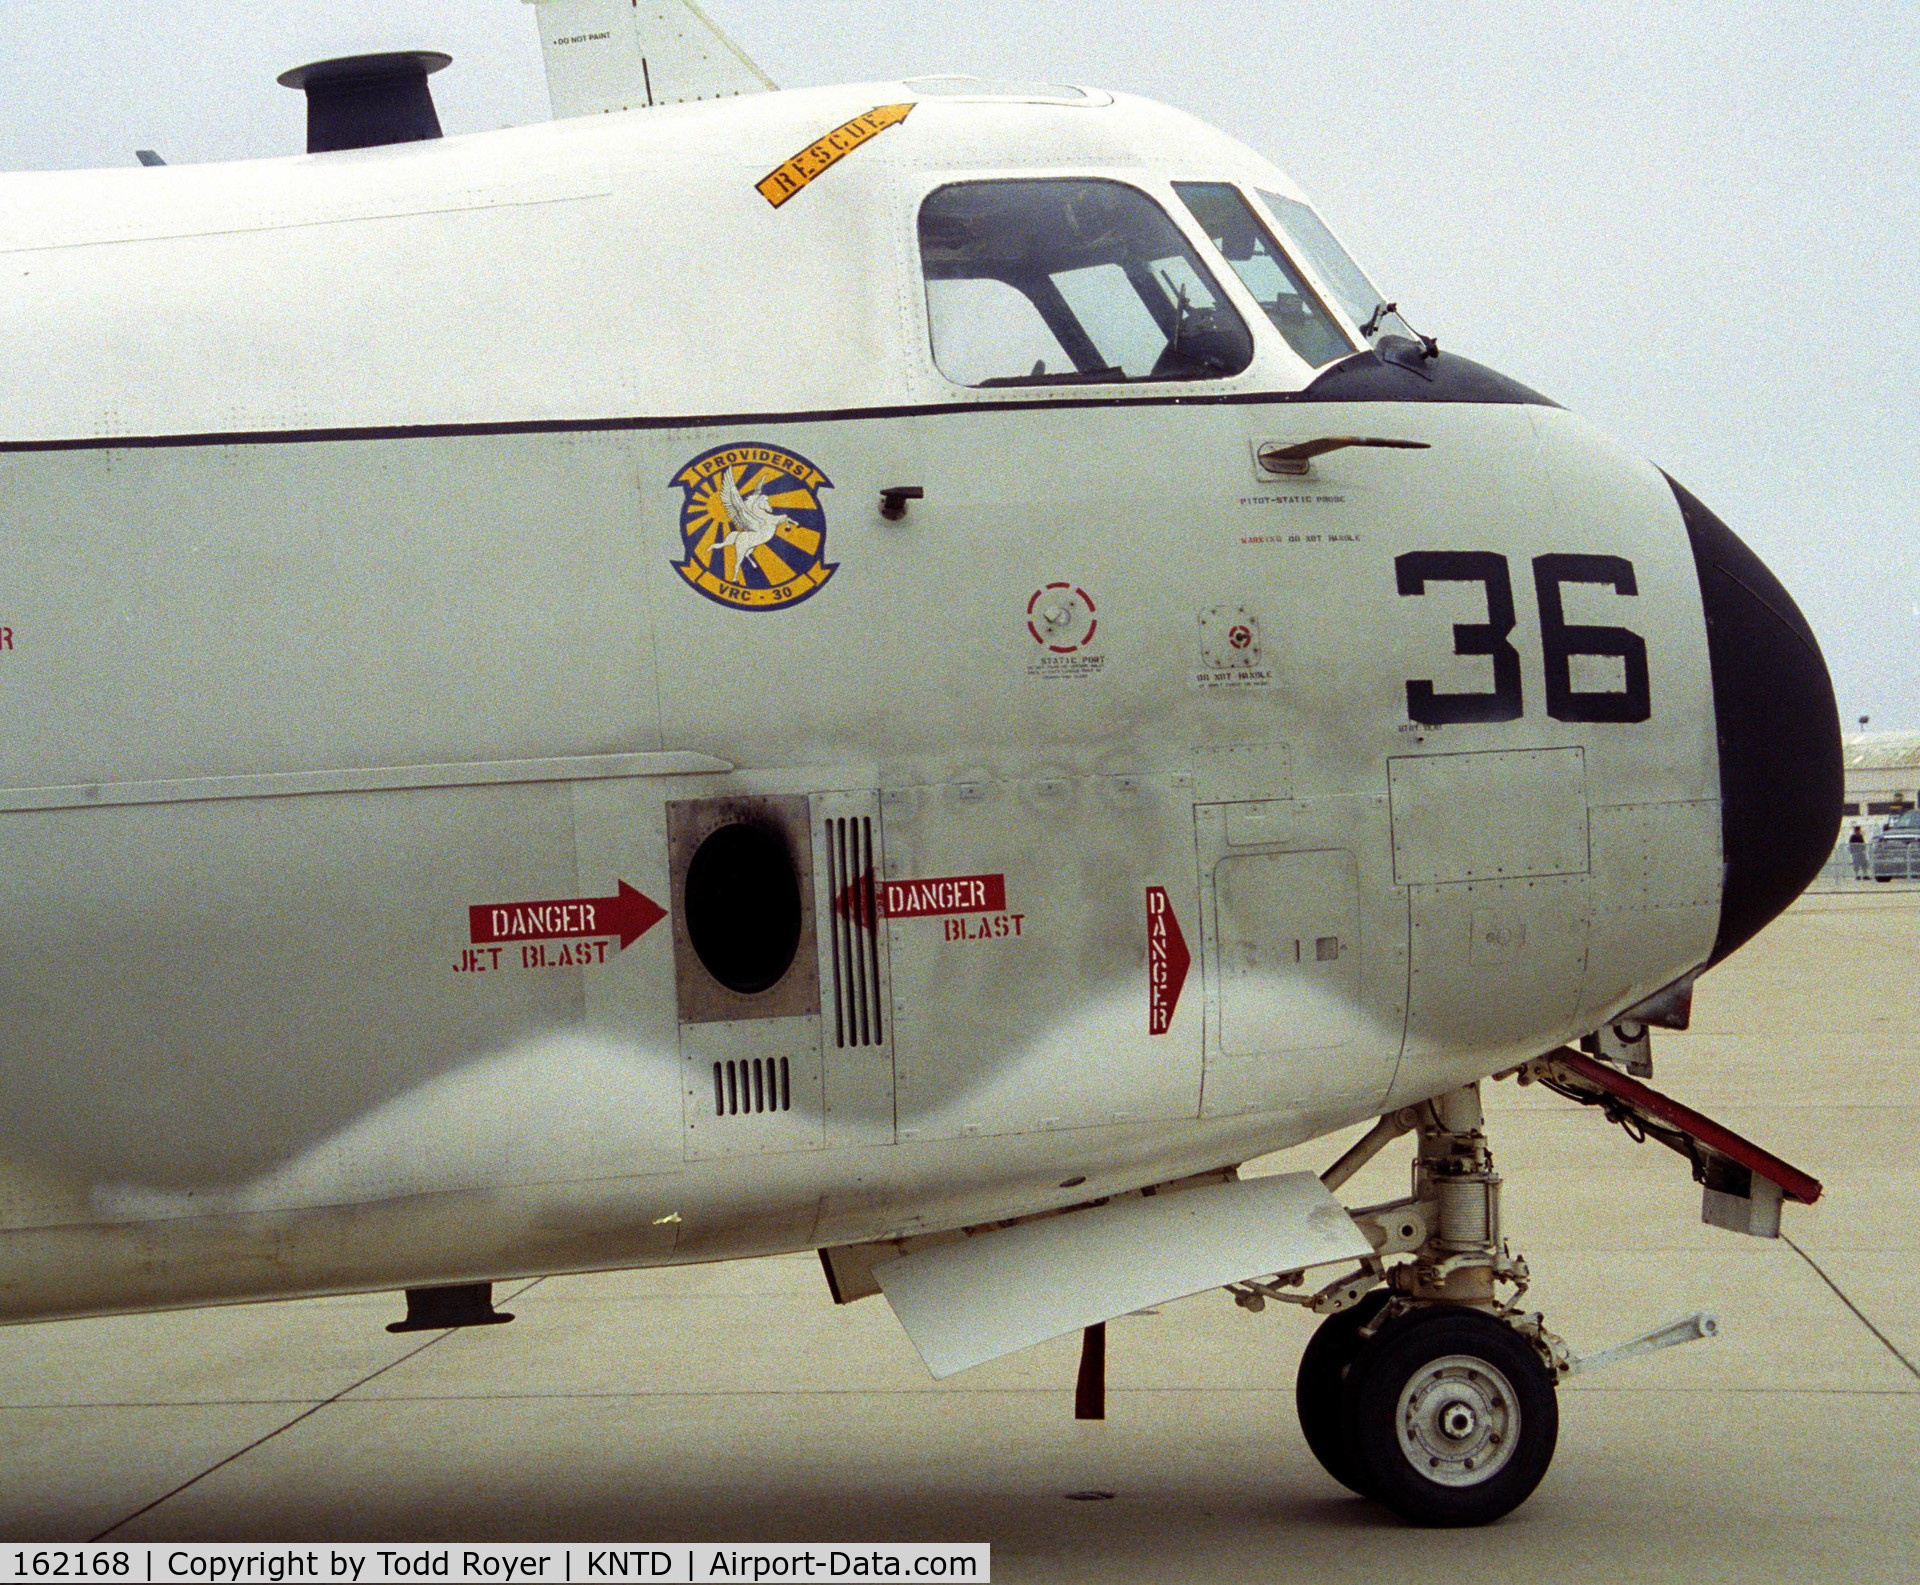 162168, Grumman C-2A Greyhound C/N 48, Point Mugu Airshow 2005